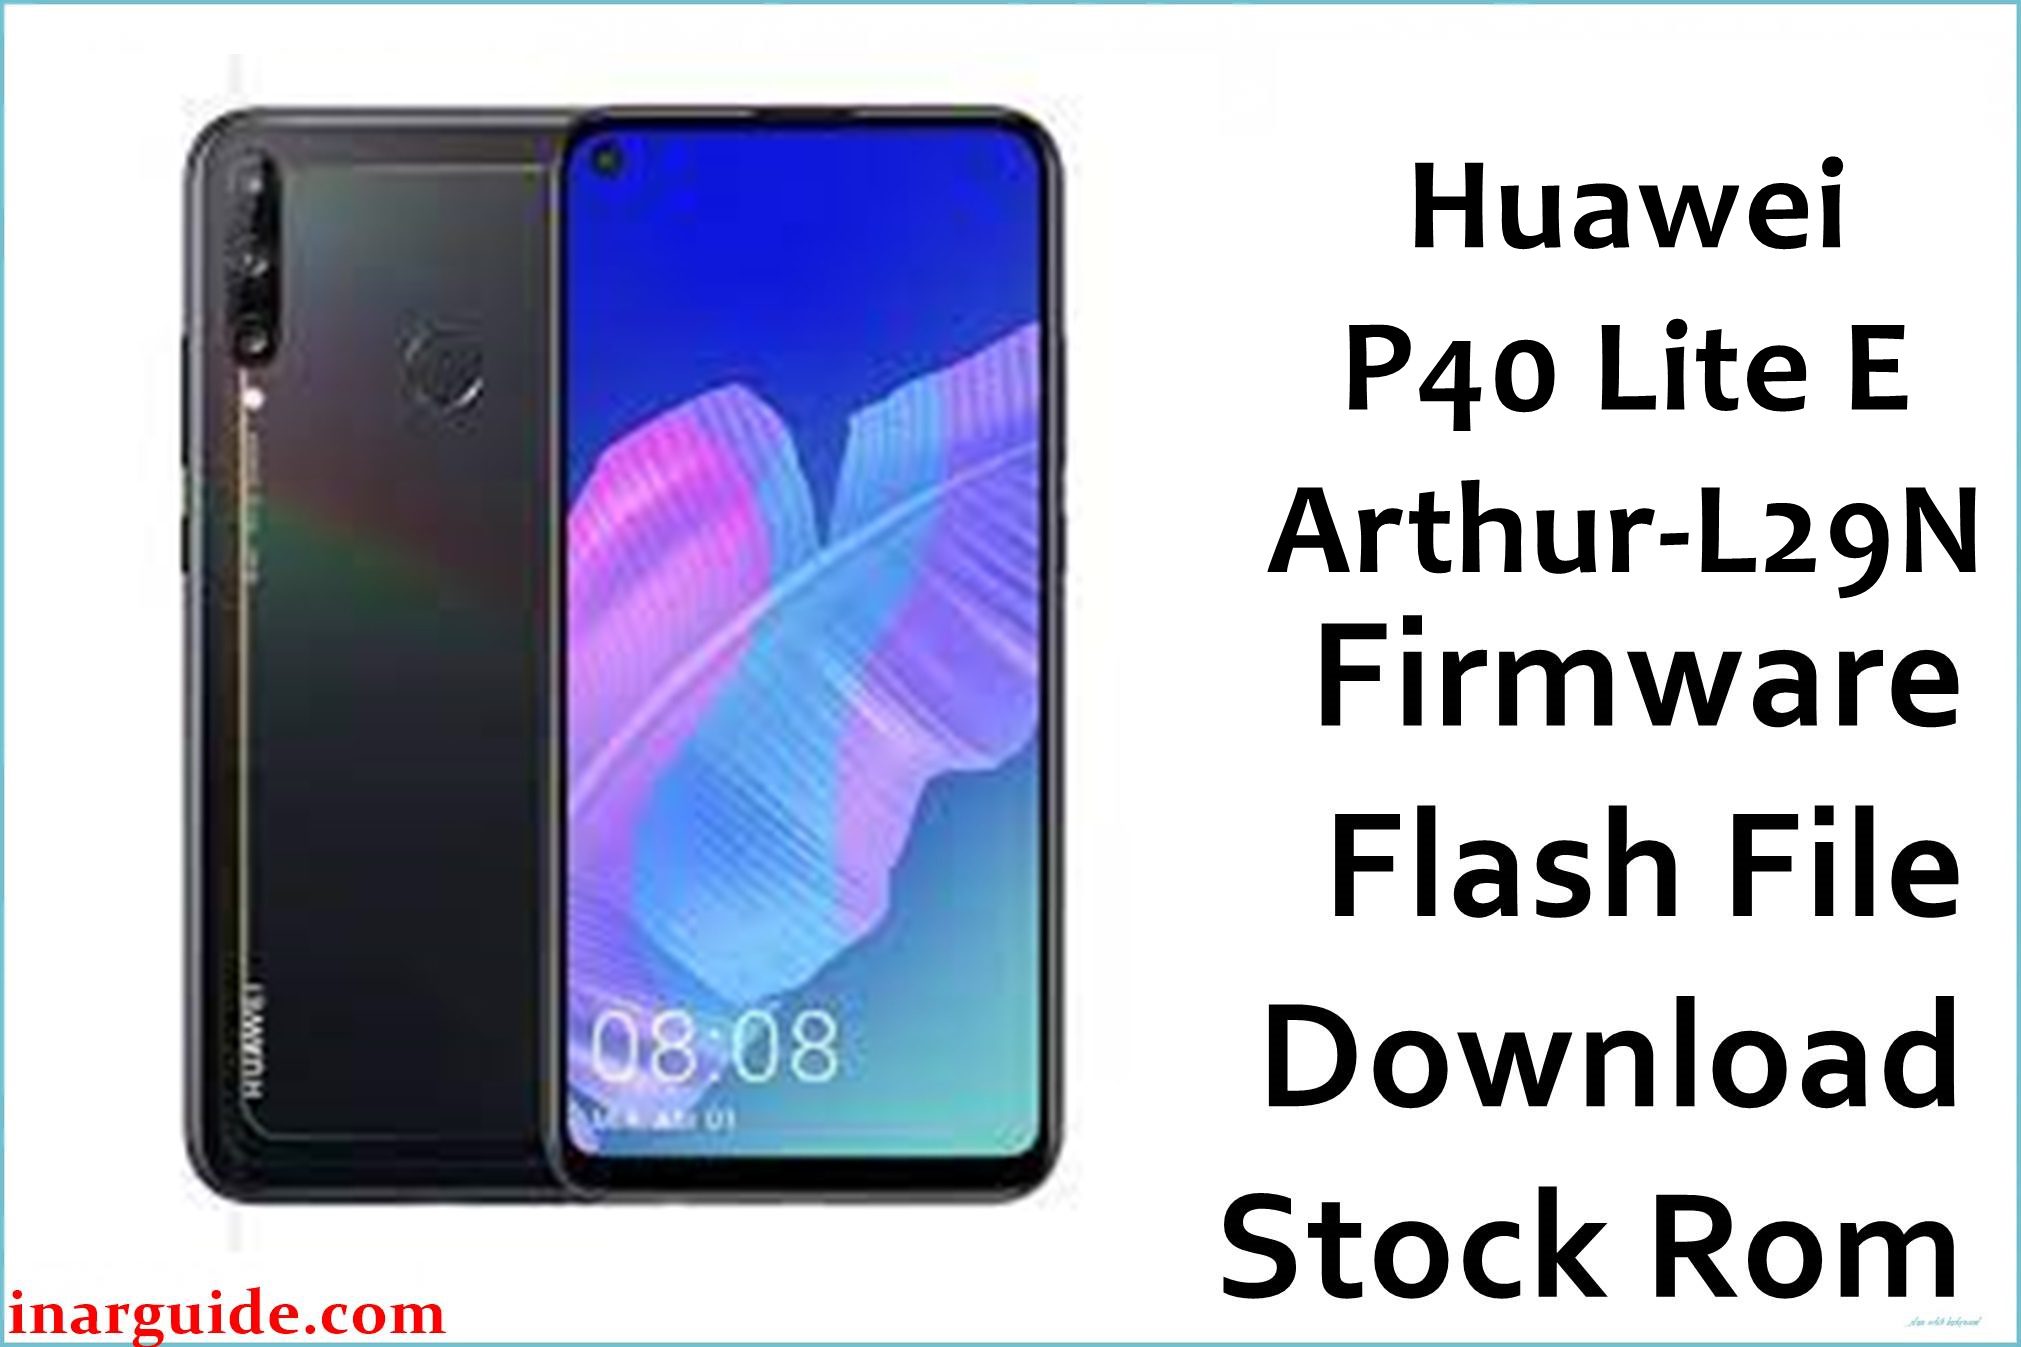 Huawei P40 Lite E Arthur L29N